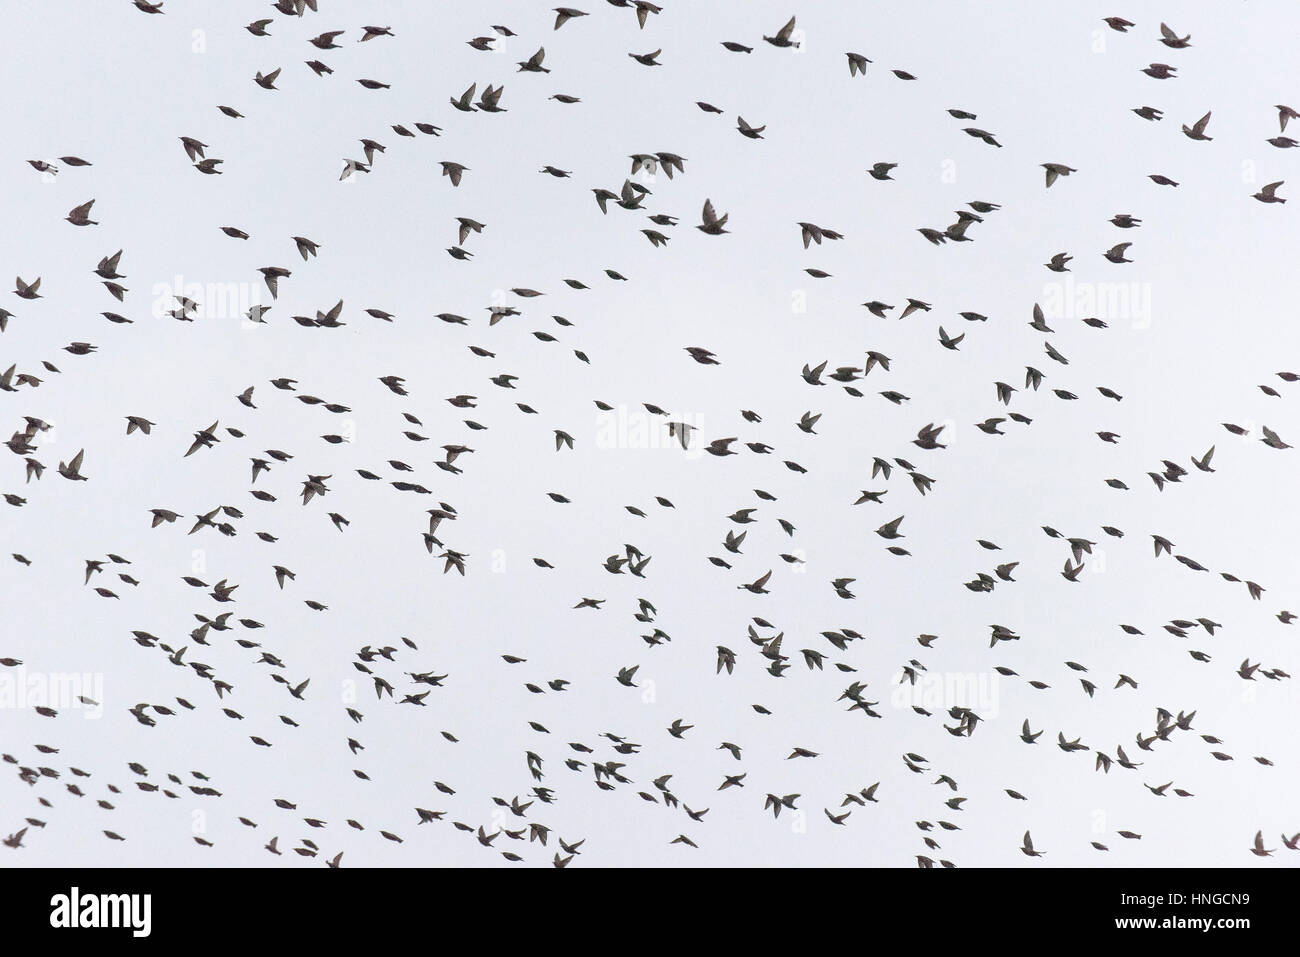 Eine große Herde von Stare fliegen overhead. Stockfoto